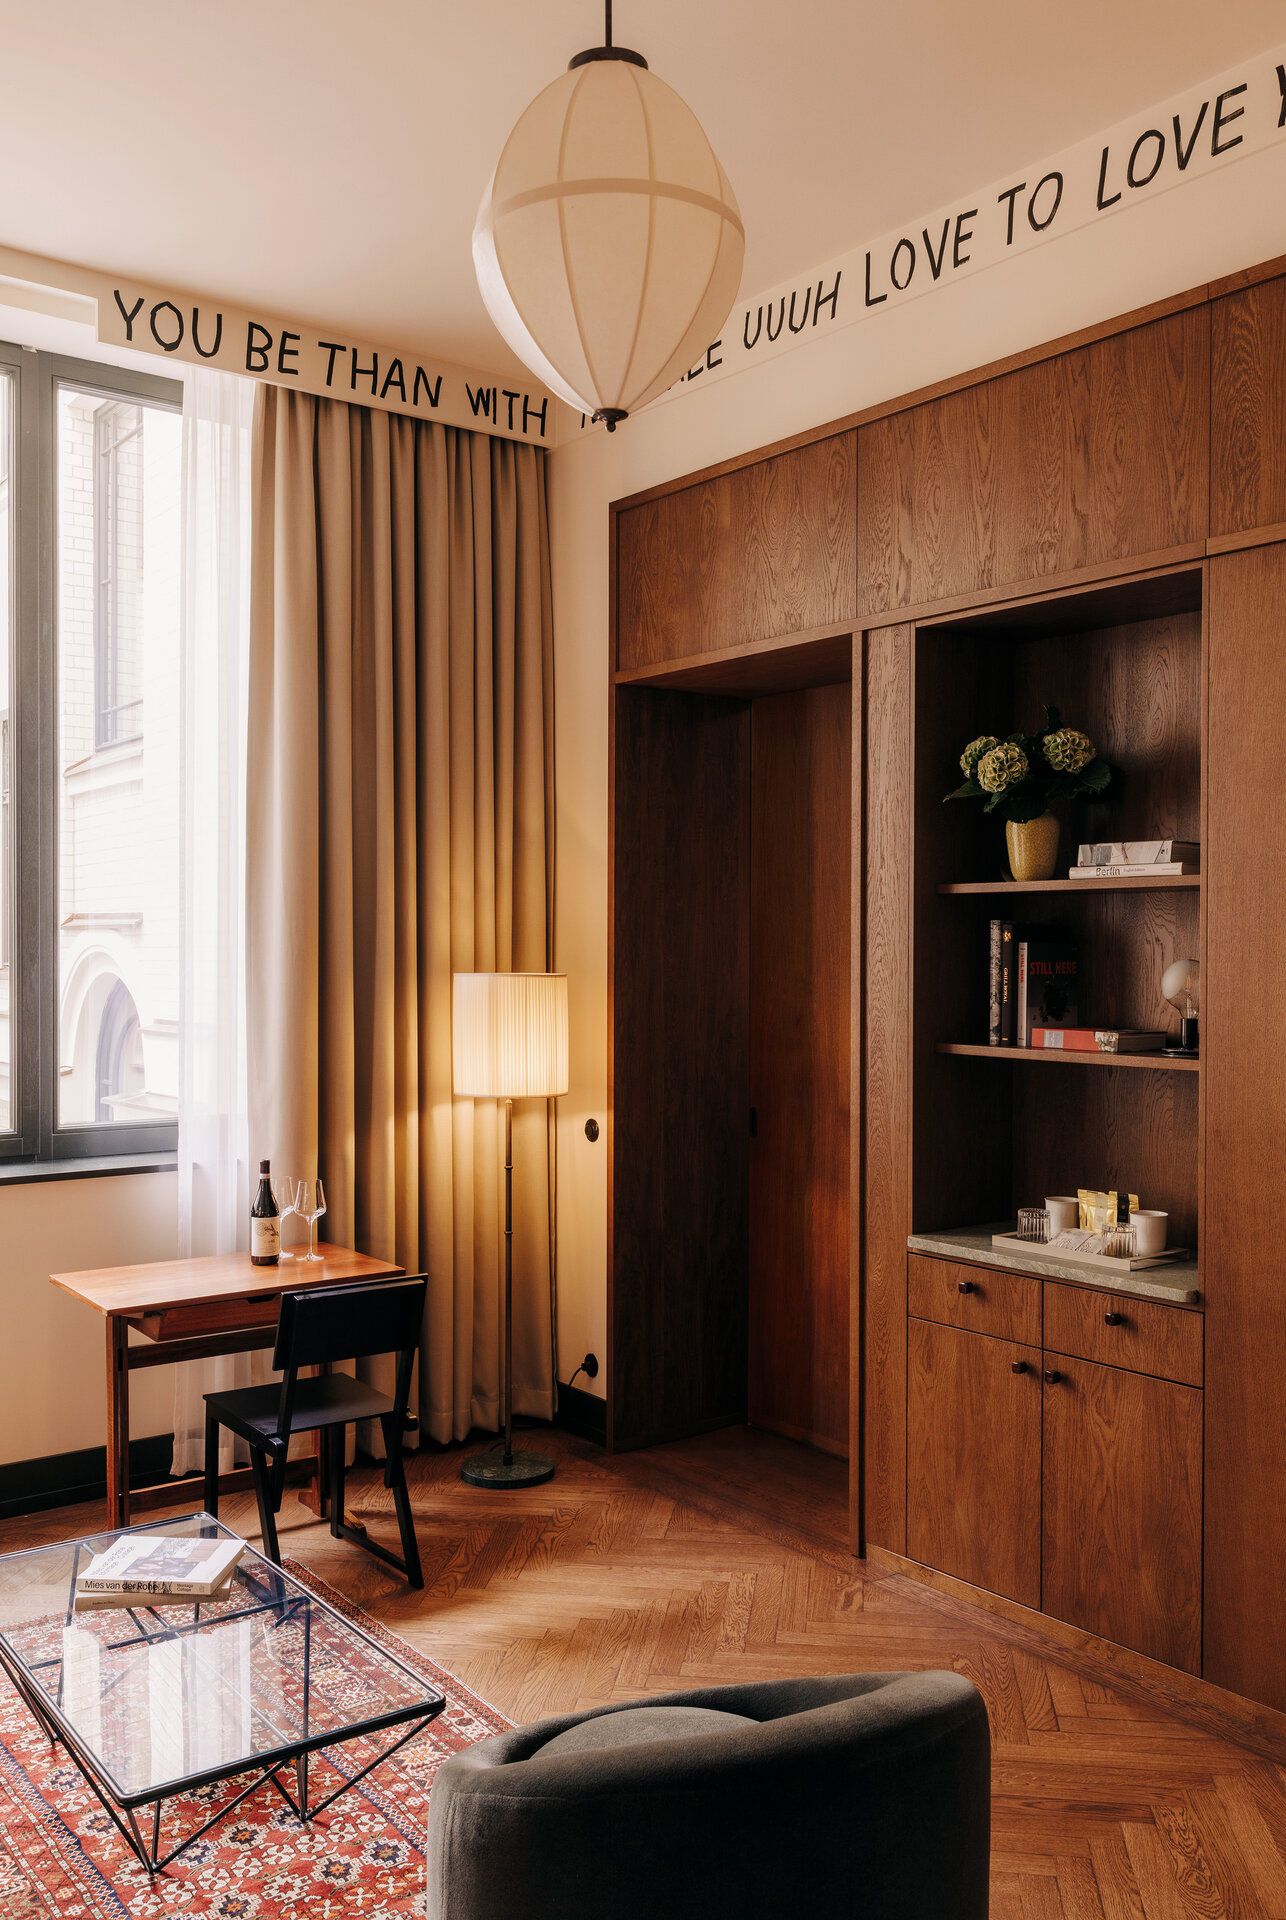 Wohnbereich eines Hotelzimmers im Boutiquehotel Château Royal Berlin ausgestattet mit einem großen Fenster, vor dem ein kleiner Schreibtisch steht, einer gemütlichen Sitzgelegenheit und einer großen Schrankwand in dunklen Holztönen